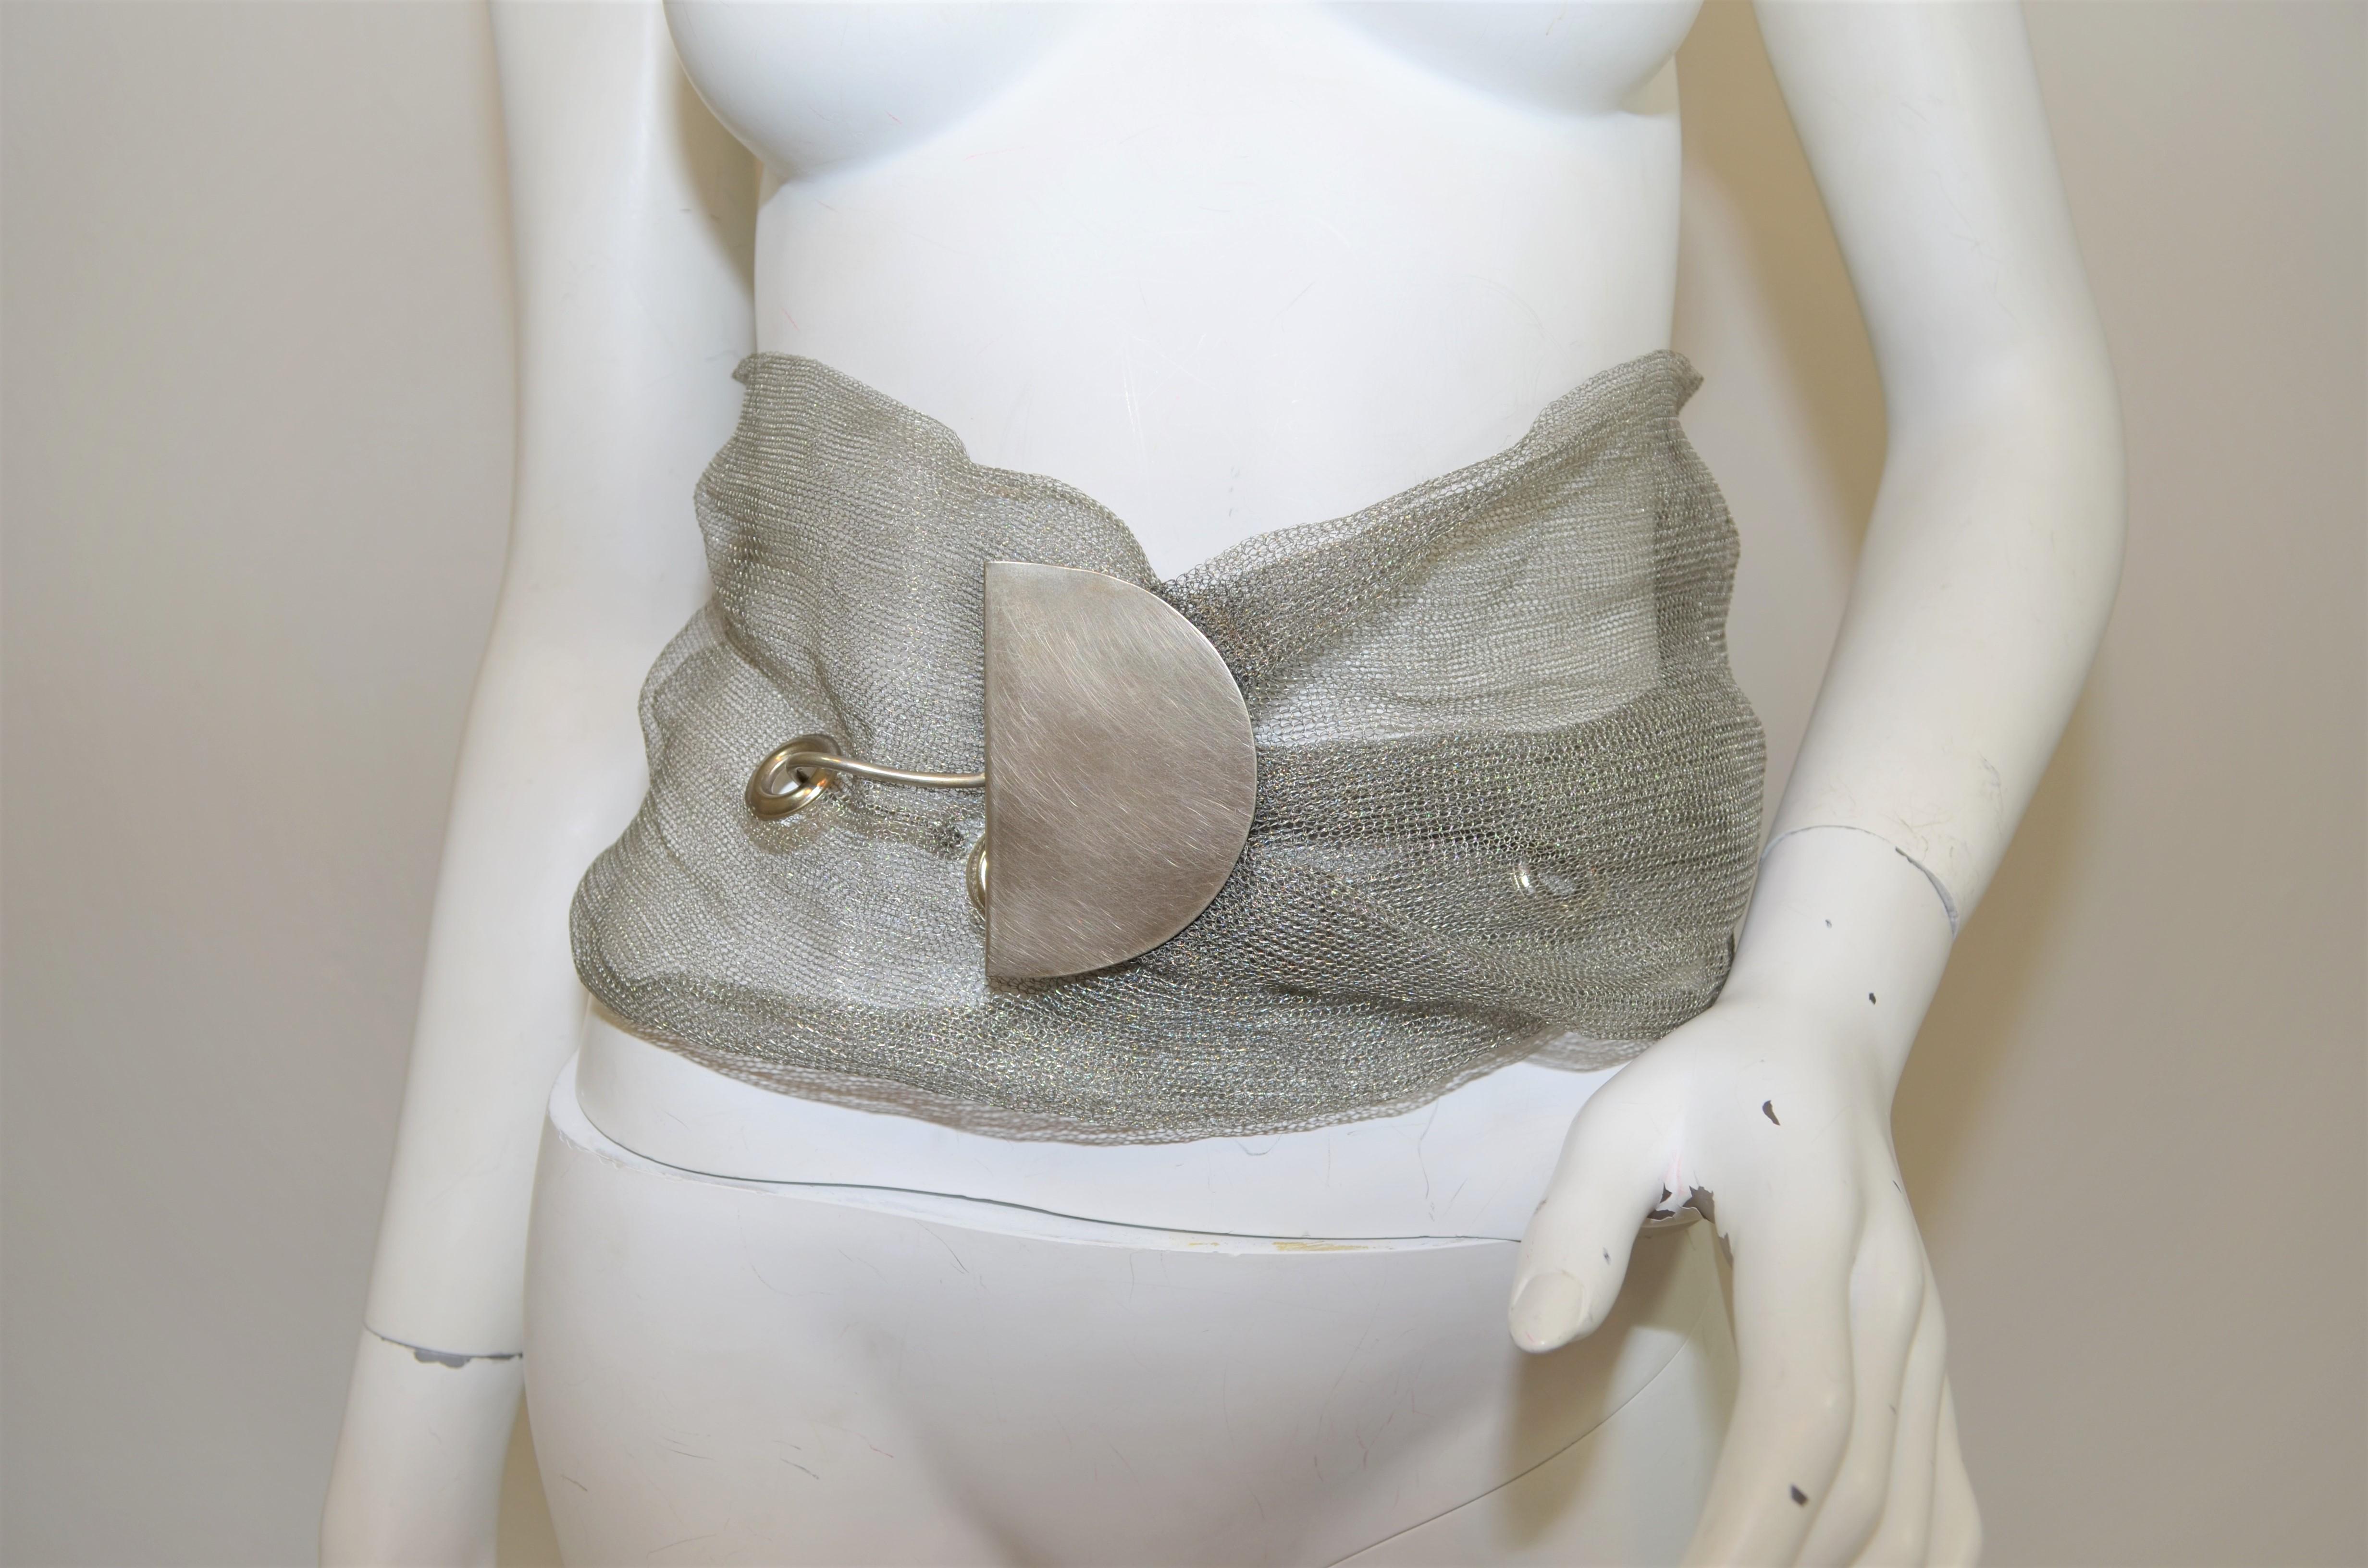 Sarah Cavender Gürtel ist in einem silbernen Mesh-Metall mit einem Hakenverschluss vorgestellt und misst 7,25 cm breit und 48 cm lang. Der Gürtel ist signiert und befindet sich in einem guten gebrauchten Zustand.

Abmessungen:
Breite 7,25''
Länge